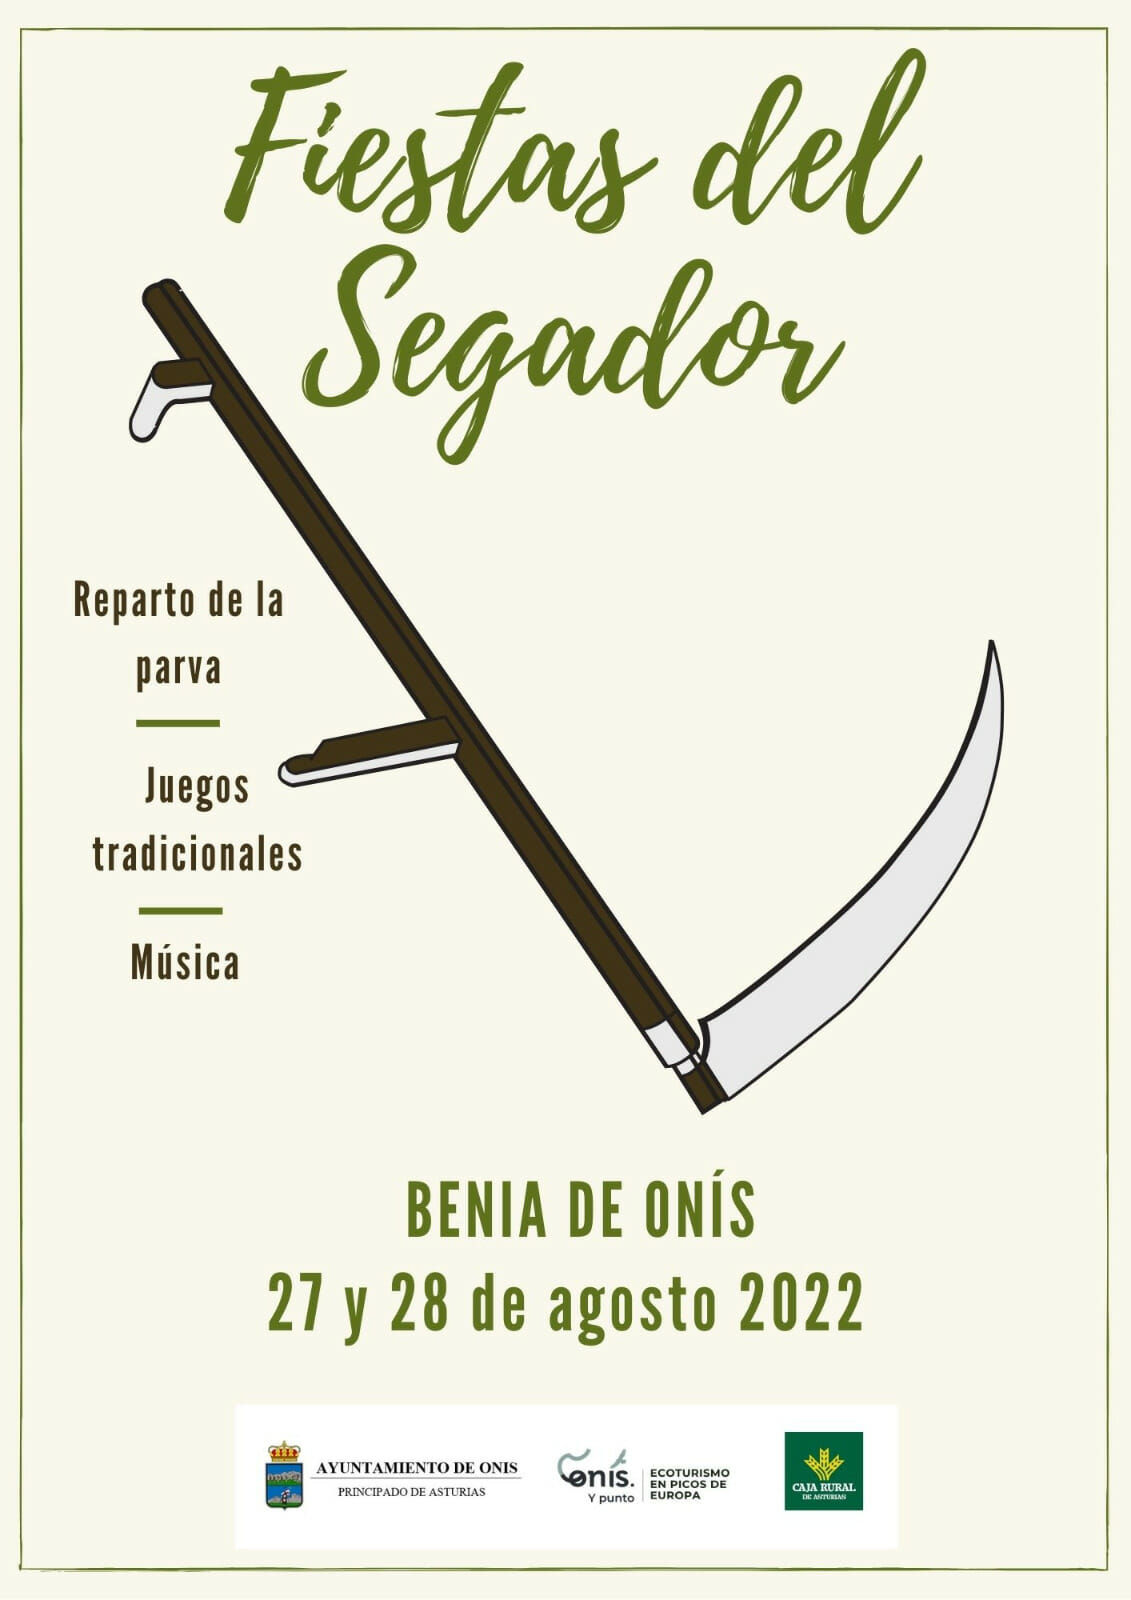 Cartel Fiestas del Segador 2022